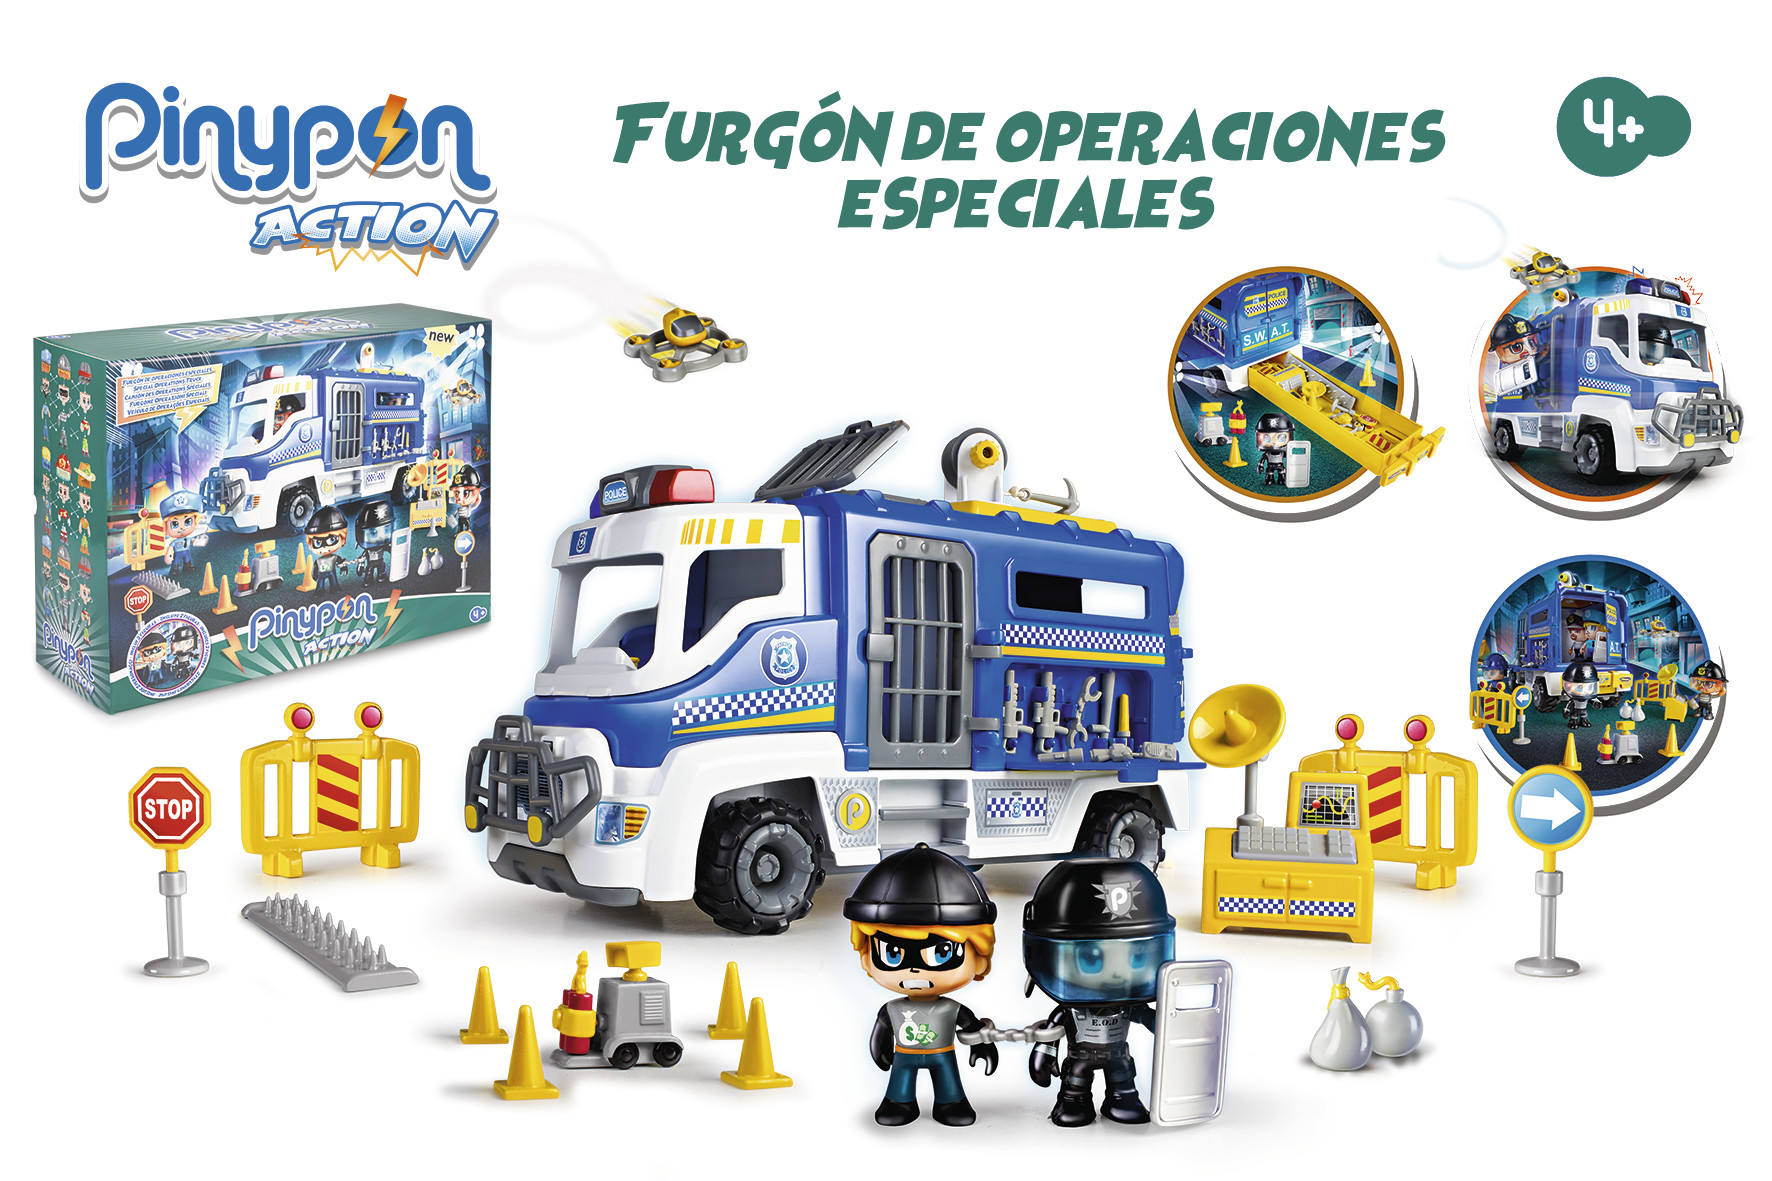 PINYPON ACTION FURGON DE OPERACIONES ESPECIALES 14784 - N63621